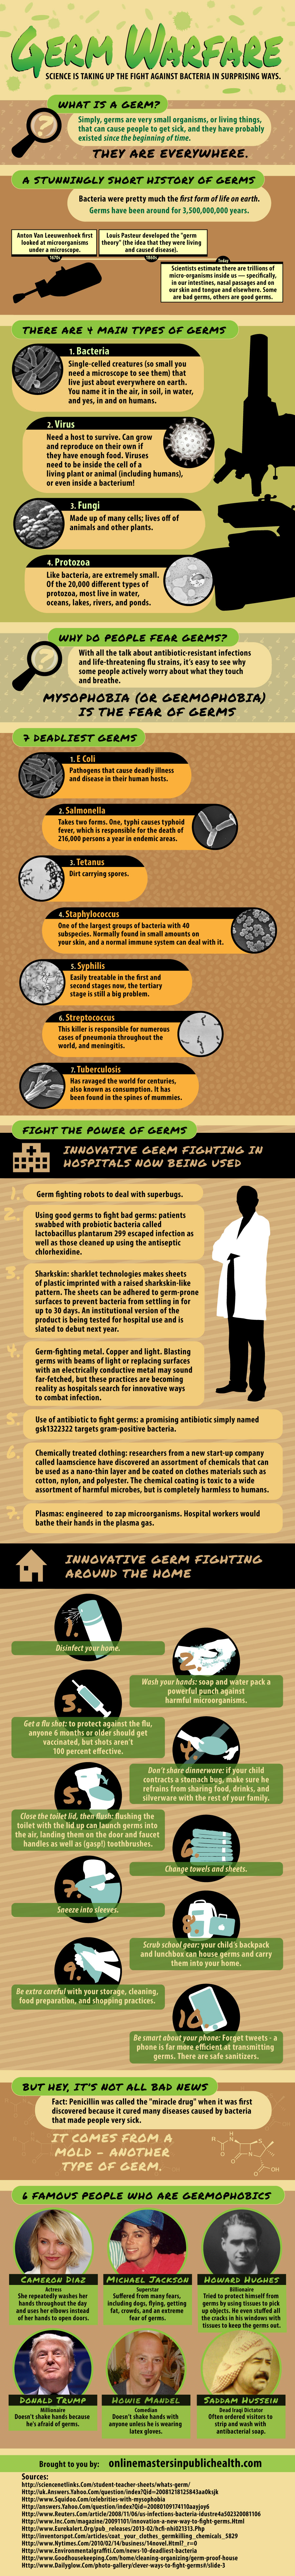 Germ Warfare Facts